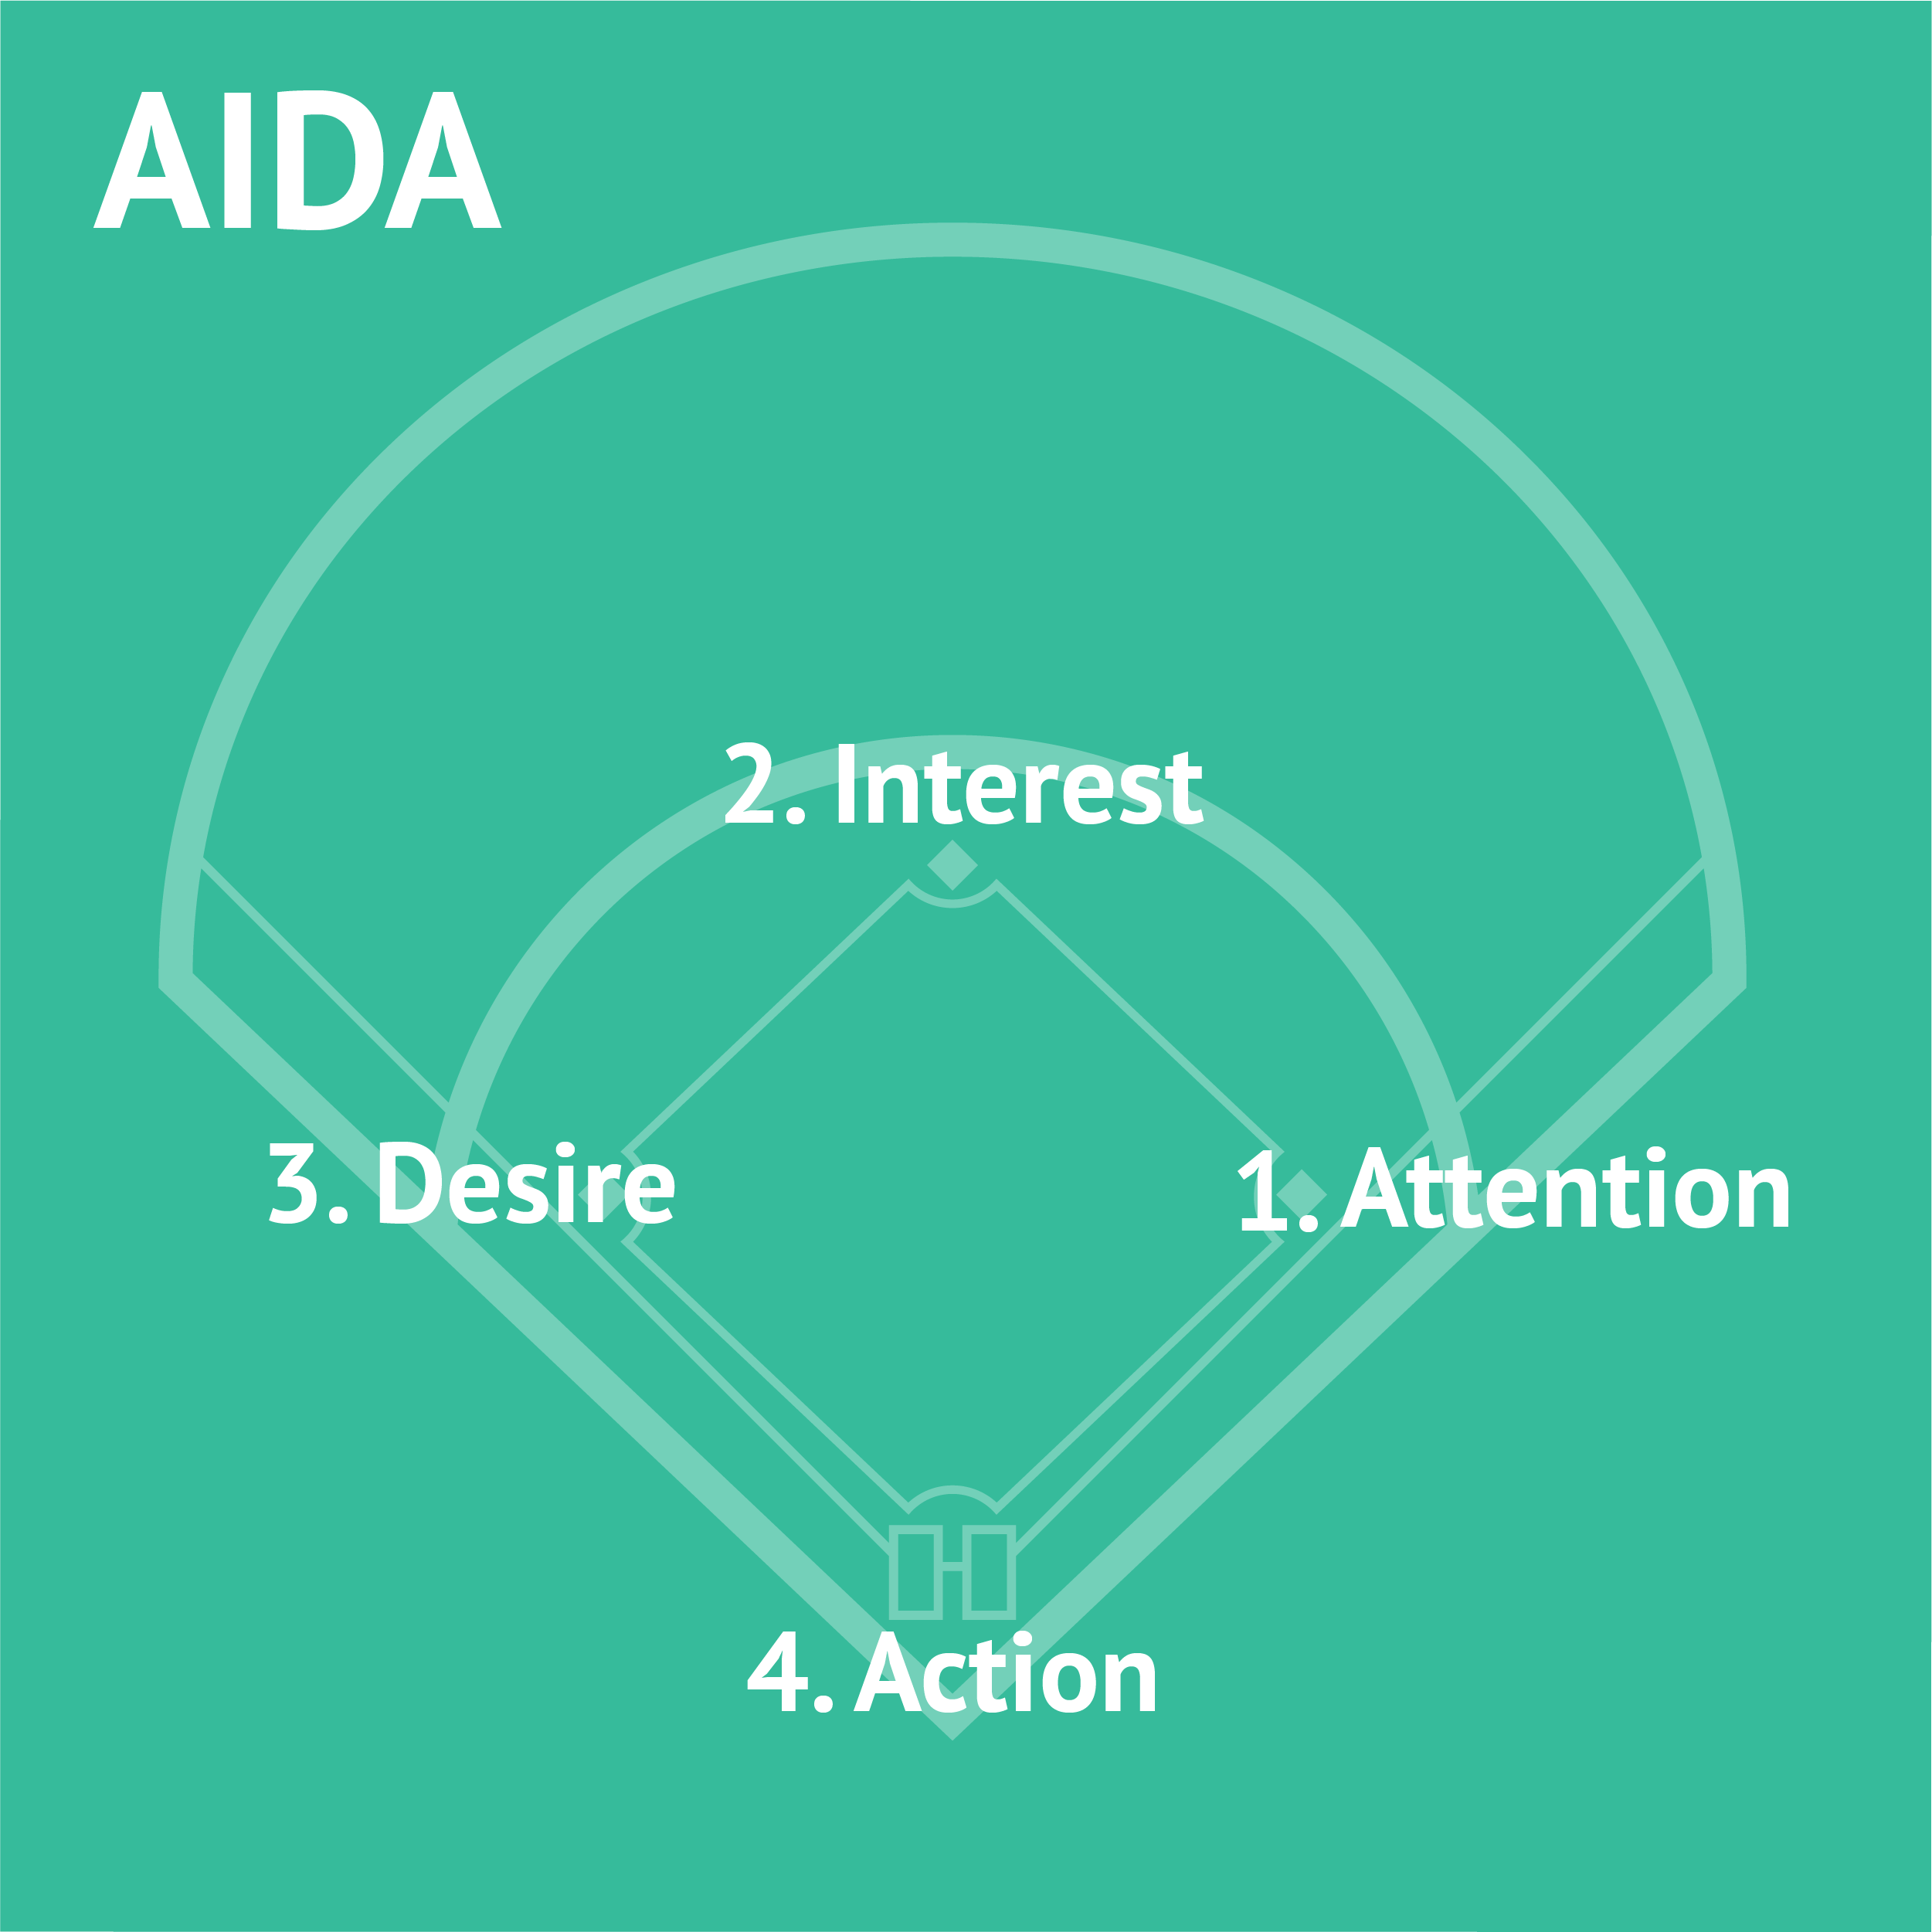 AIDA and baseball